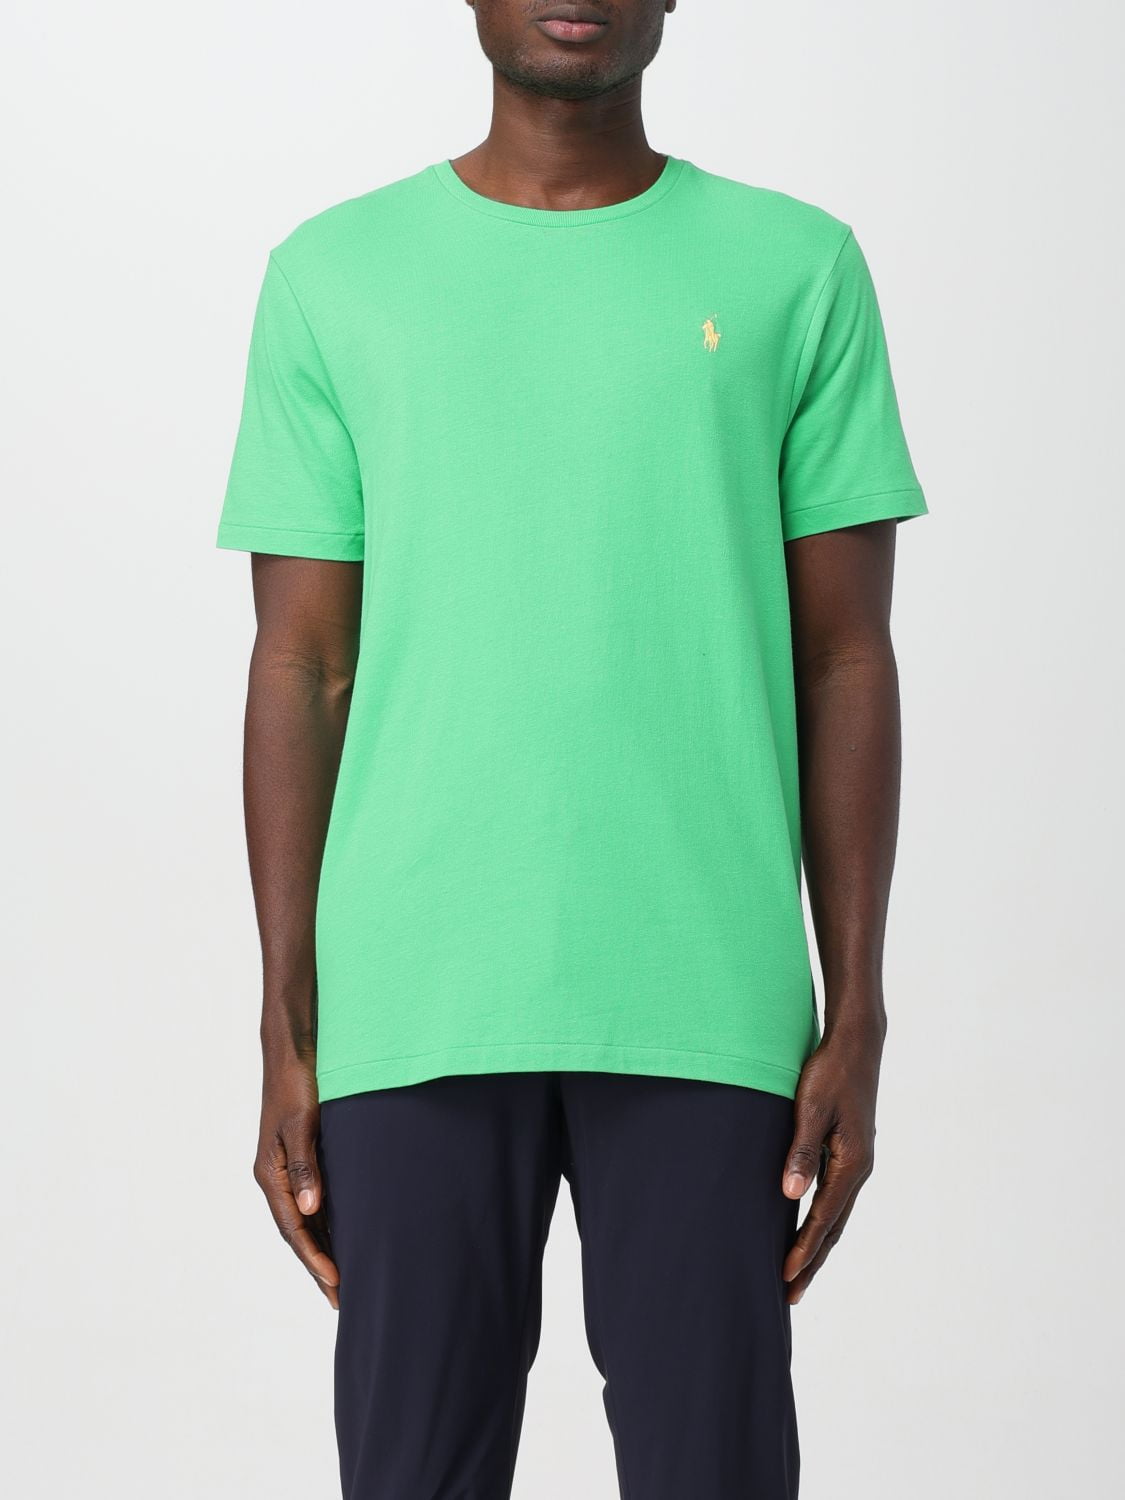 Polo Ralph Lauren T-Shirt Men Green Men - Walmart.com